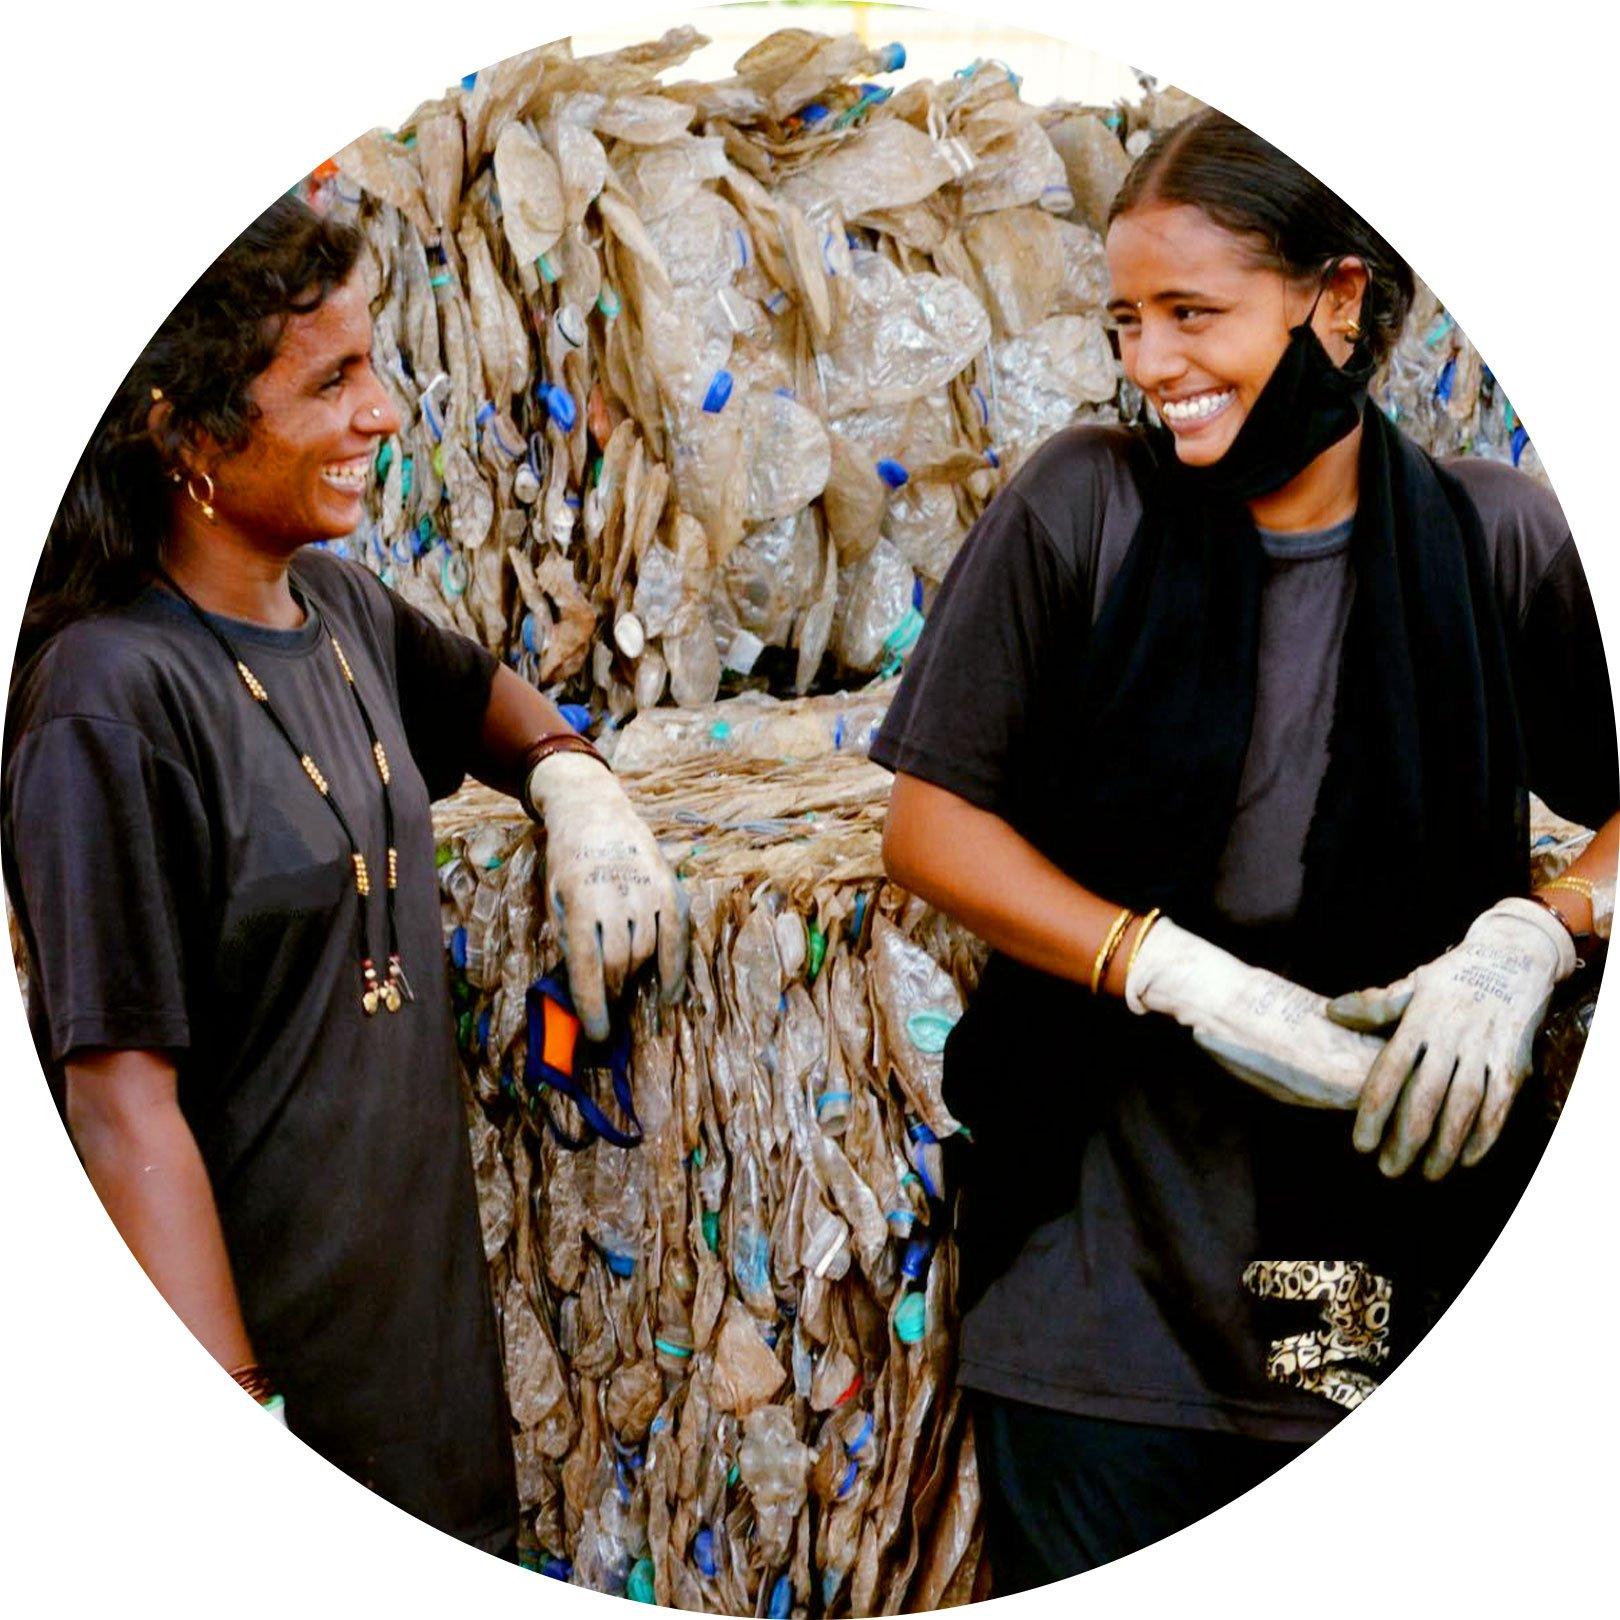 essence en Plastics For Change werken samen aan meer recycling